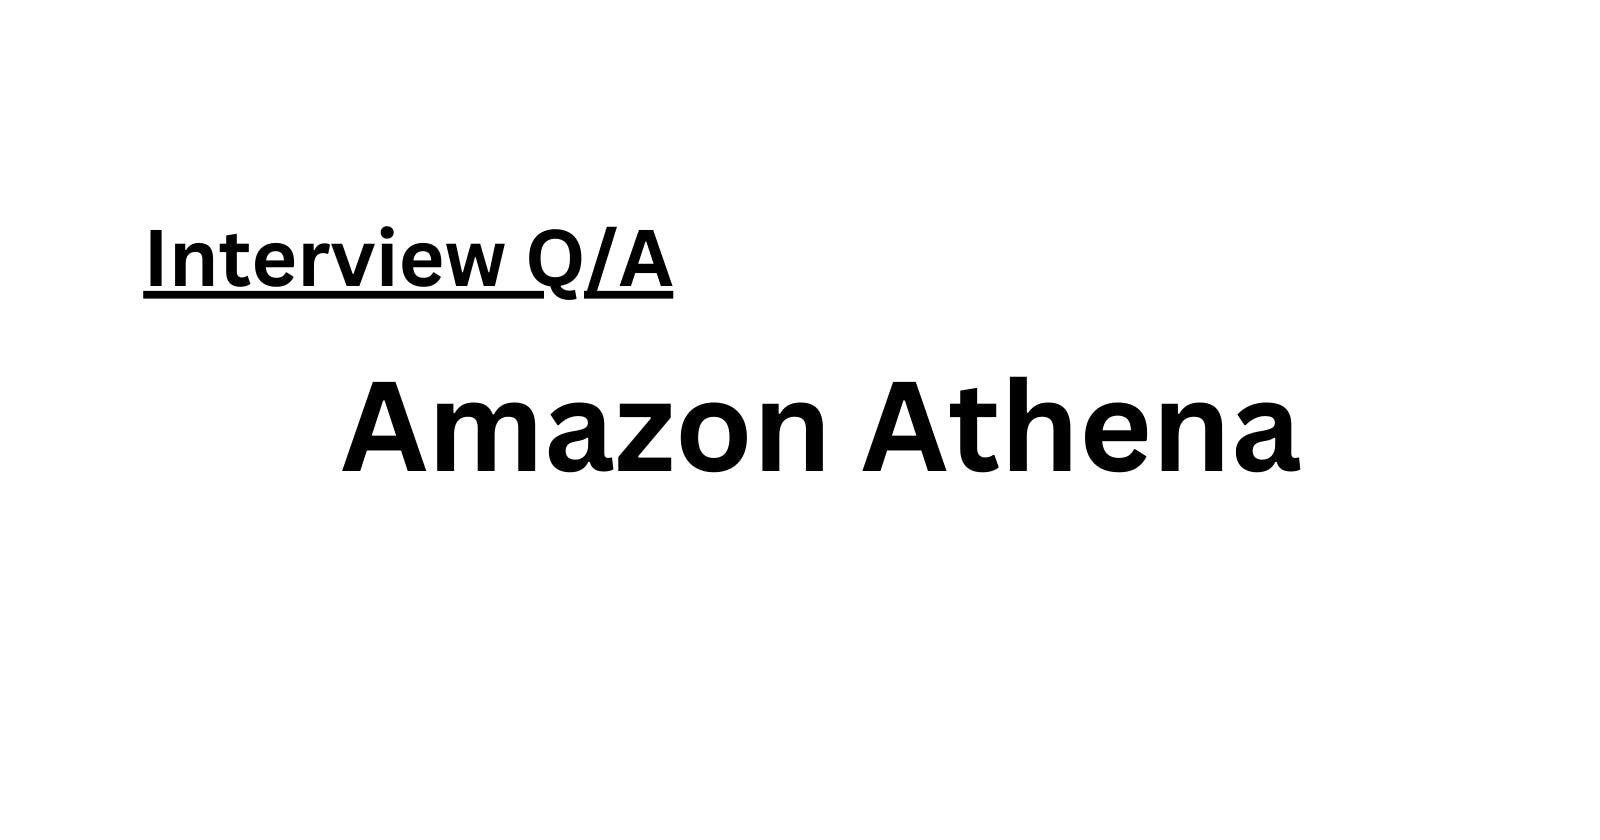 Amazon Athena: Your Serverless Data Analytics Solution